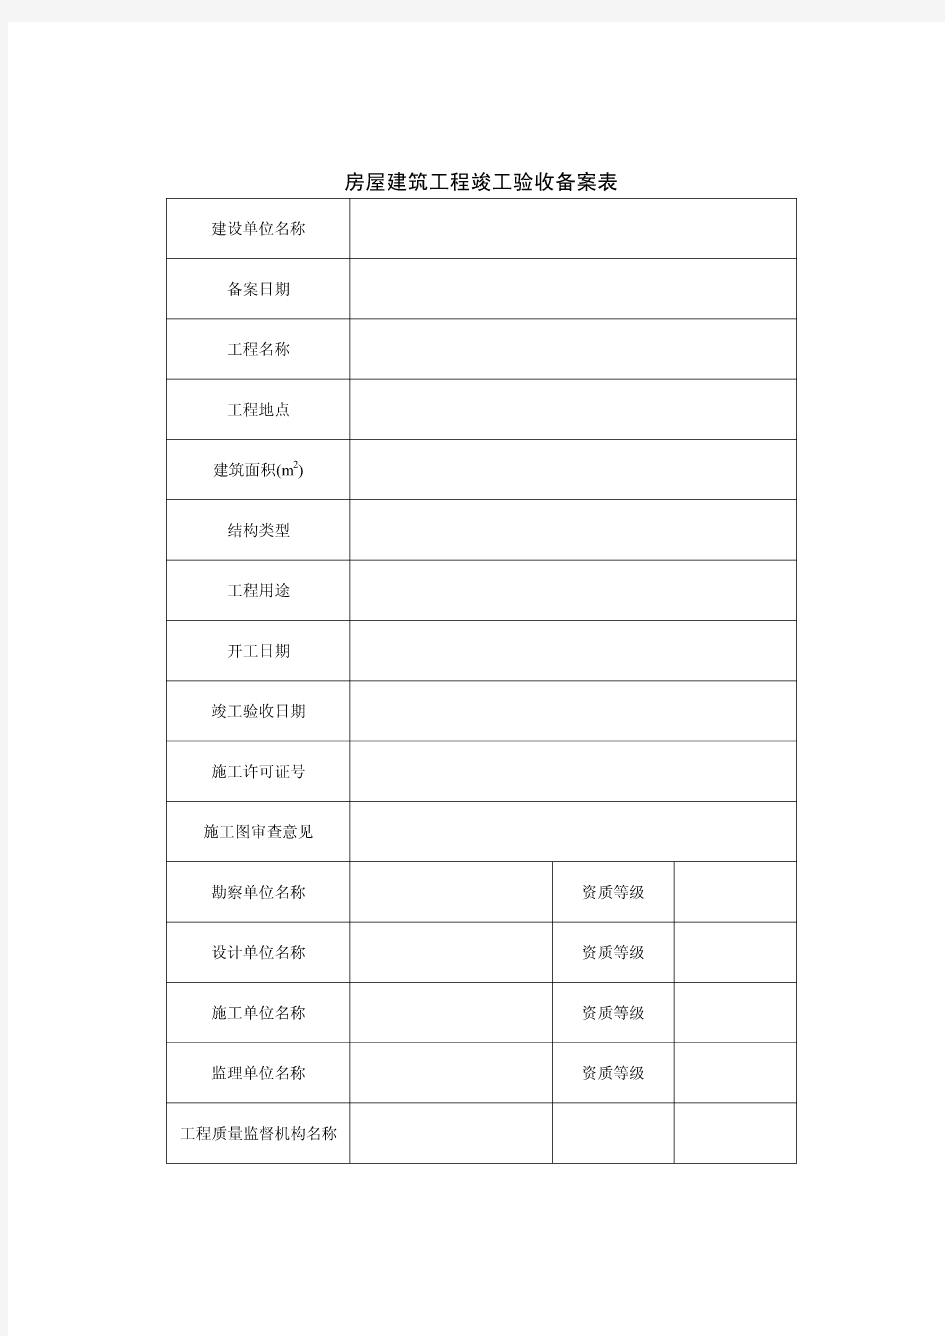 宁波市建筑工程资料管理规程用表(甬统表)全套